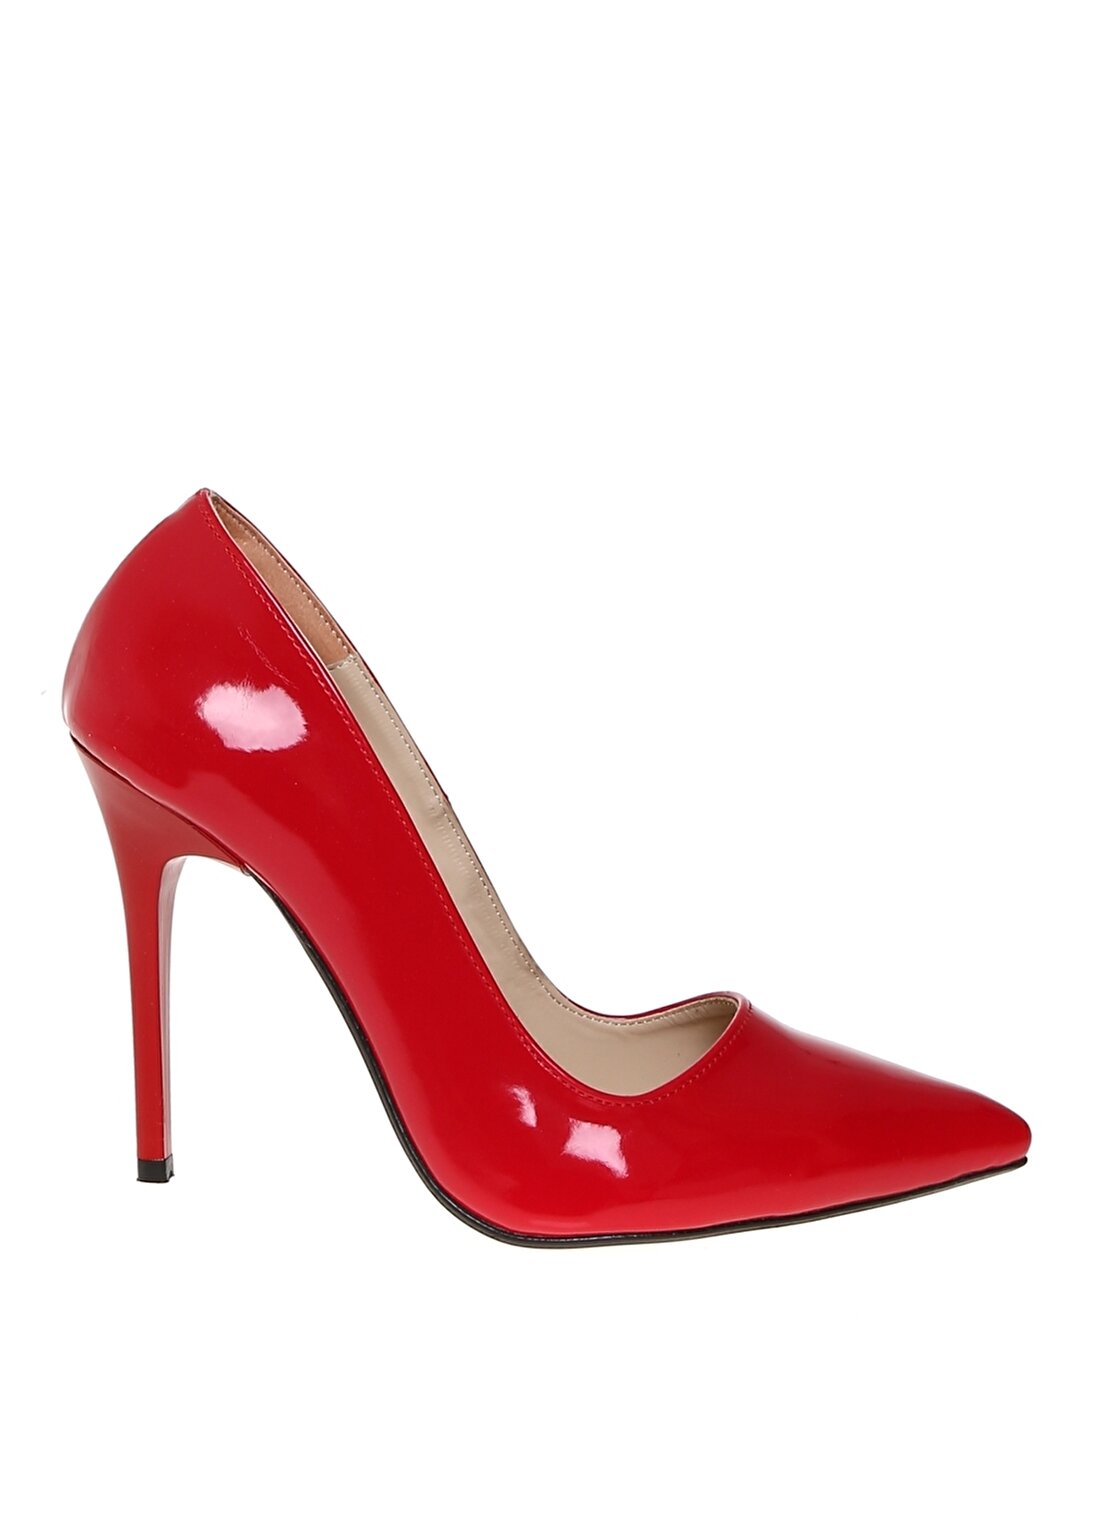 Bambi Ayakkabı Kadın Rugan Kırmızı Topuklu Ayakkabı